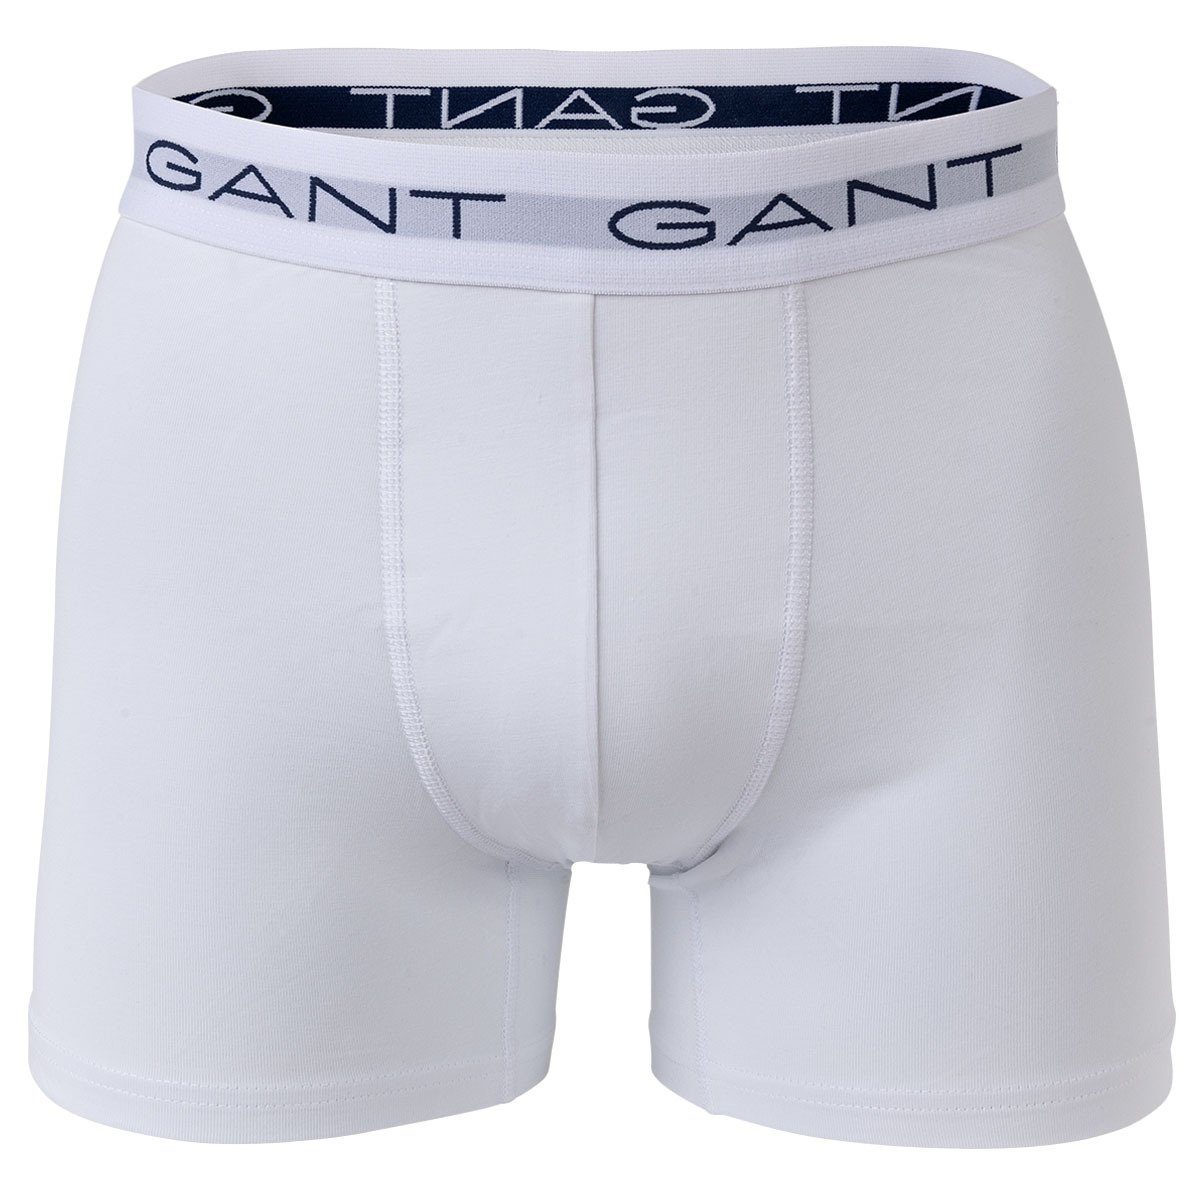 Boxer Grau Gant Briefs Shorts, Herren Boxer Boxer - 3er Pack